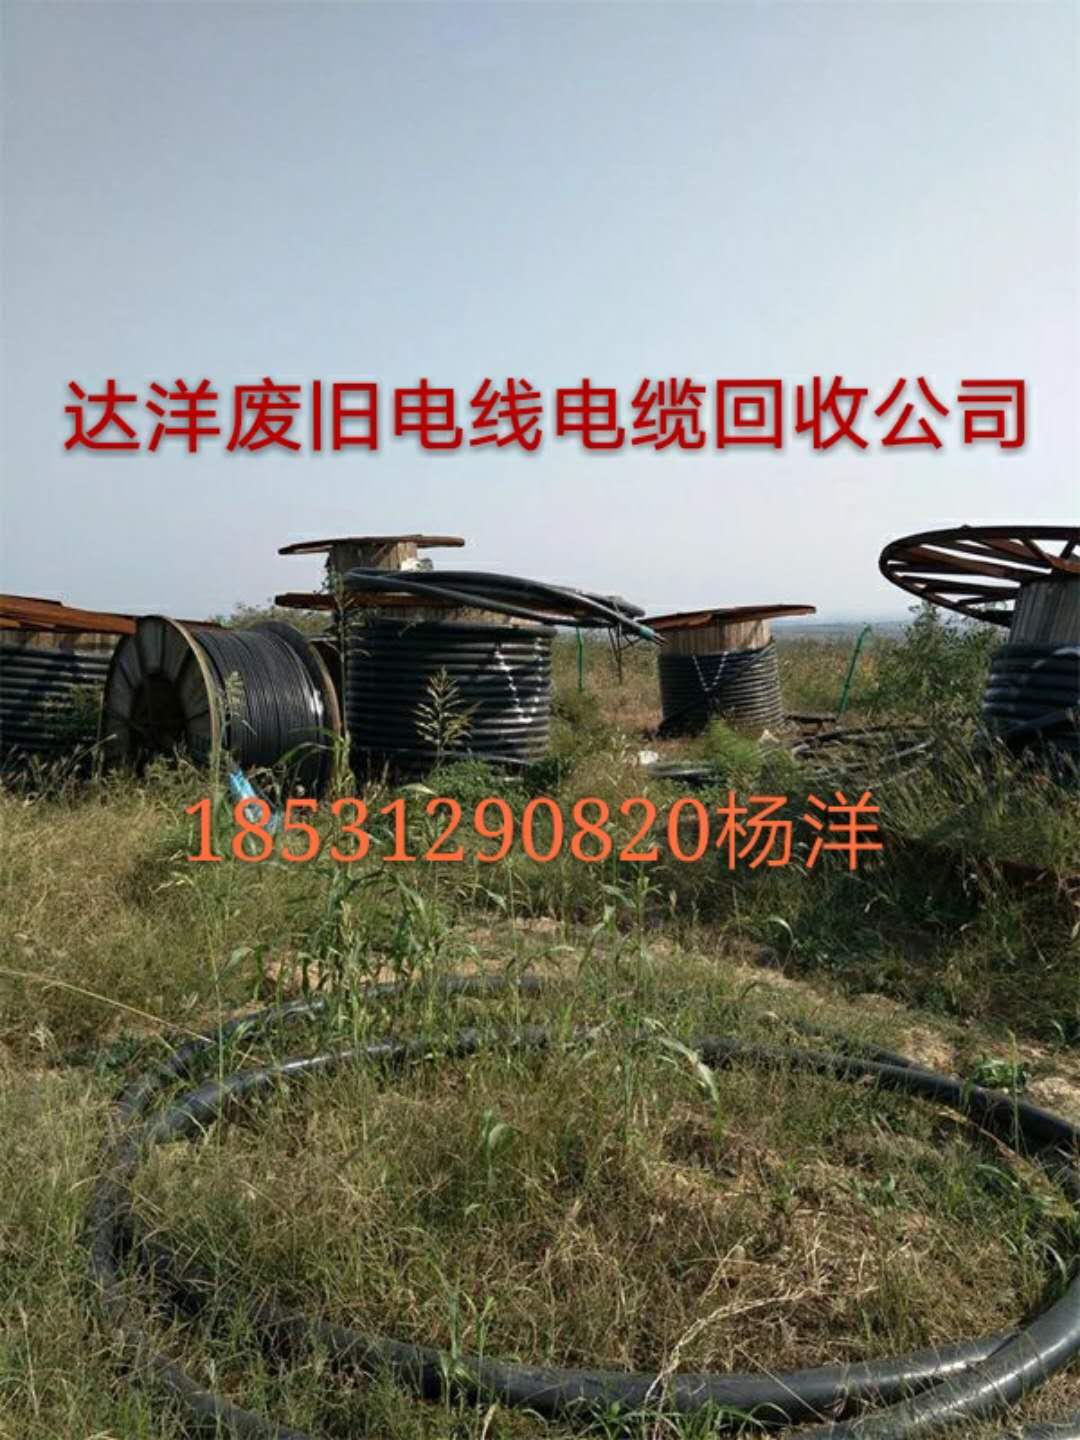 锦州废电缆回收价格 锦州废旧电缆铜电缆回收价格 执照齐全 上门回收